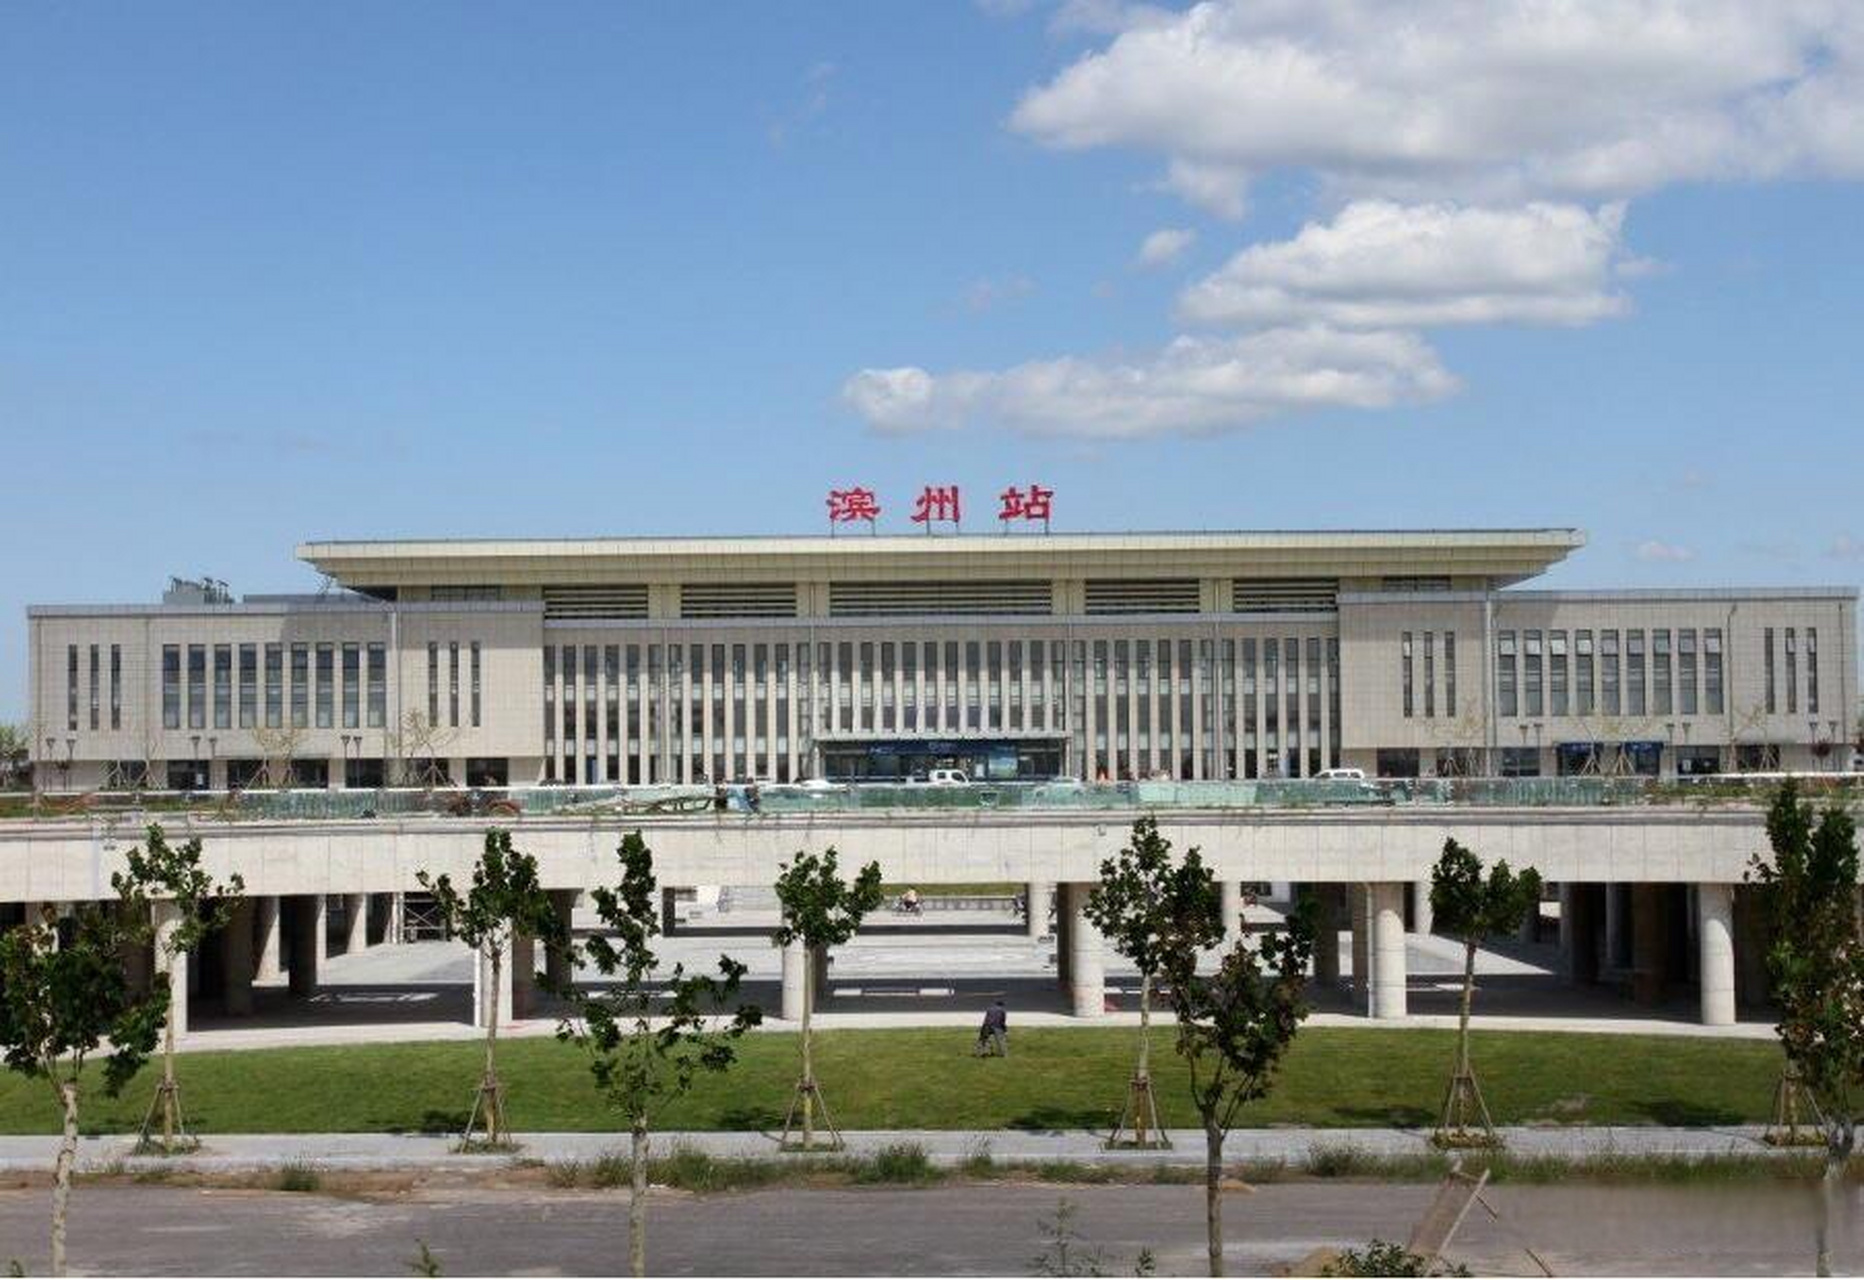 滨州站是京沪东线中间站(滨东潍铁路始发终点站)济滨城际铁路的始发